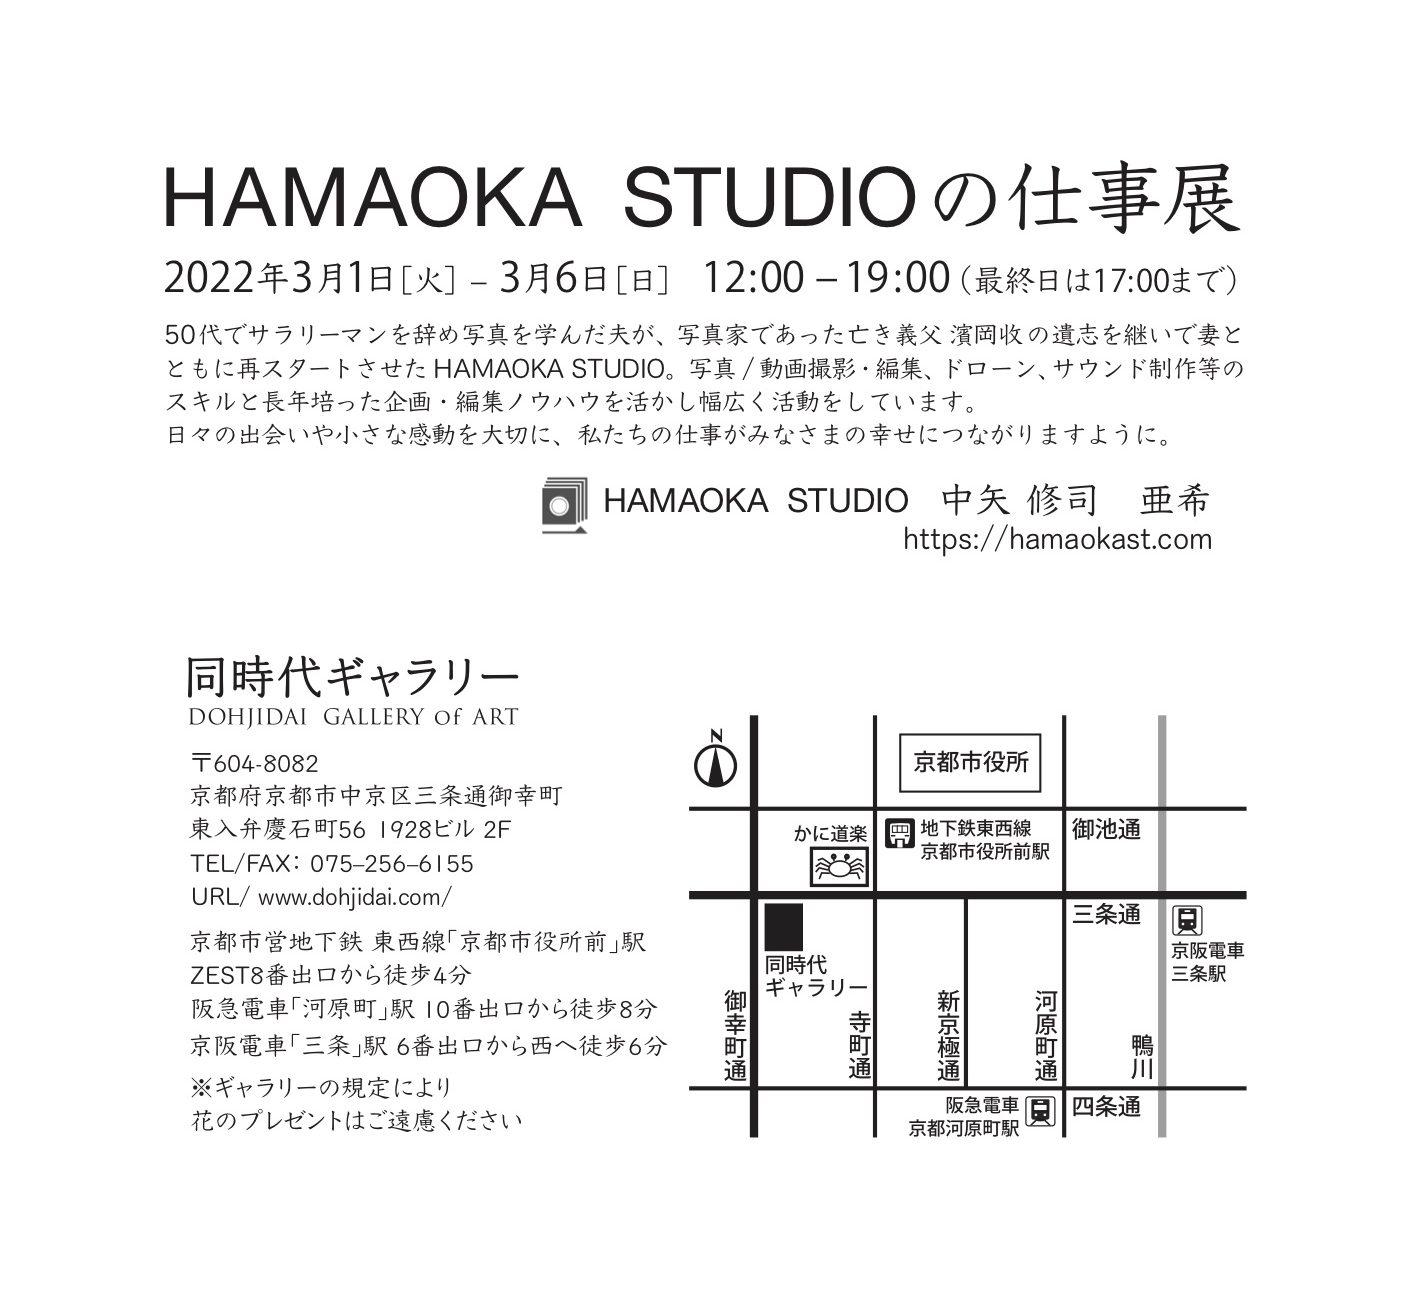 中矢修司さん & 亜希さん（写真表現大学 & Eスクール ゼミ生）が お二人で経営されているHAMAOKA STUDIO（写真/動画撮影・編集、ドローン、サウンド、デザイン、企画）の 個展「HAMAOKA STUDIOの仕事展」を京都 同時代ギャラリーにて開催